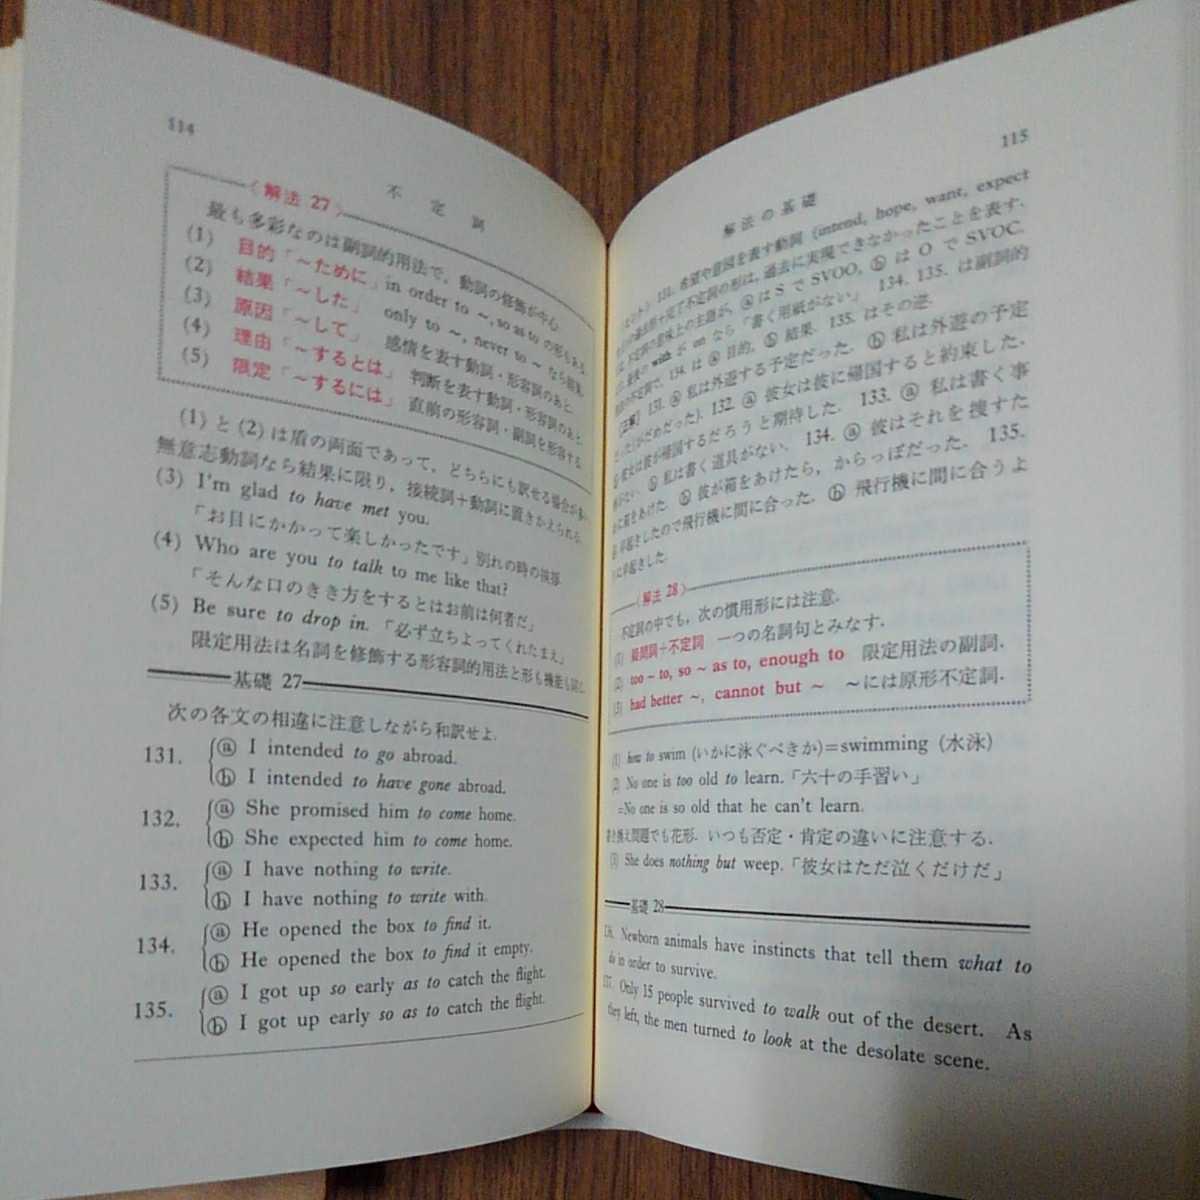 祐本寿男著「英文解釈ゼミ」研究社出版株式会社1991年4刷_画像7